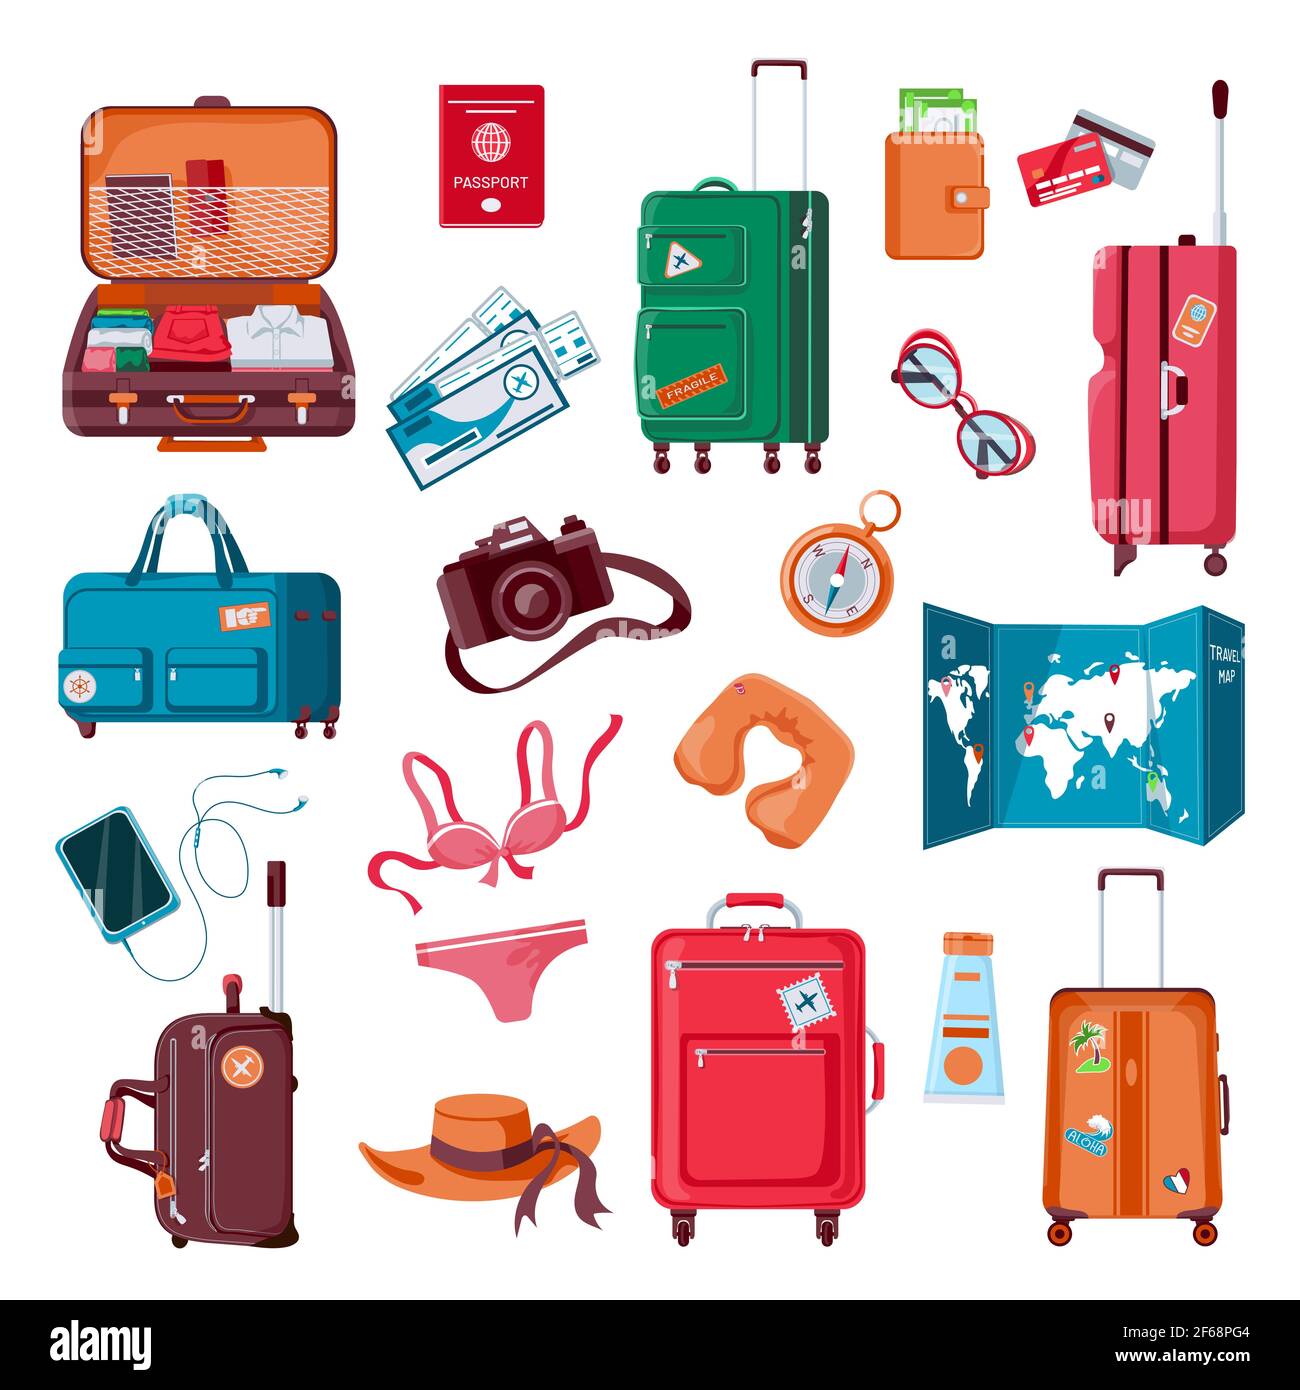 10 accesorios de viaje esenciales para llevar en el avión  Accesorios de  viaje, Preparar las maletas para un viaje, Consejos para viajes